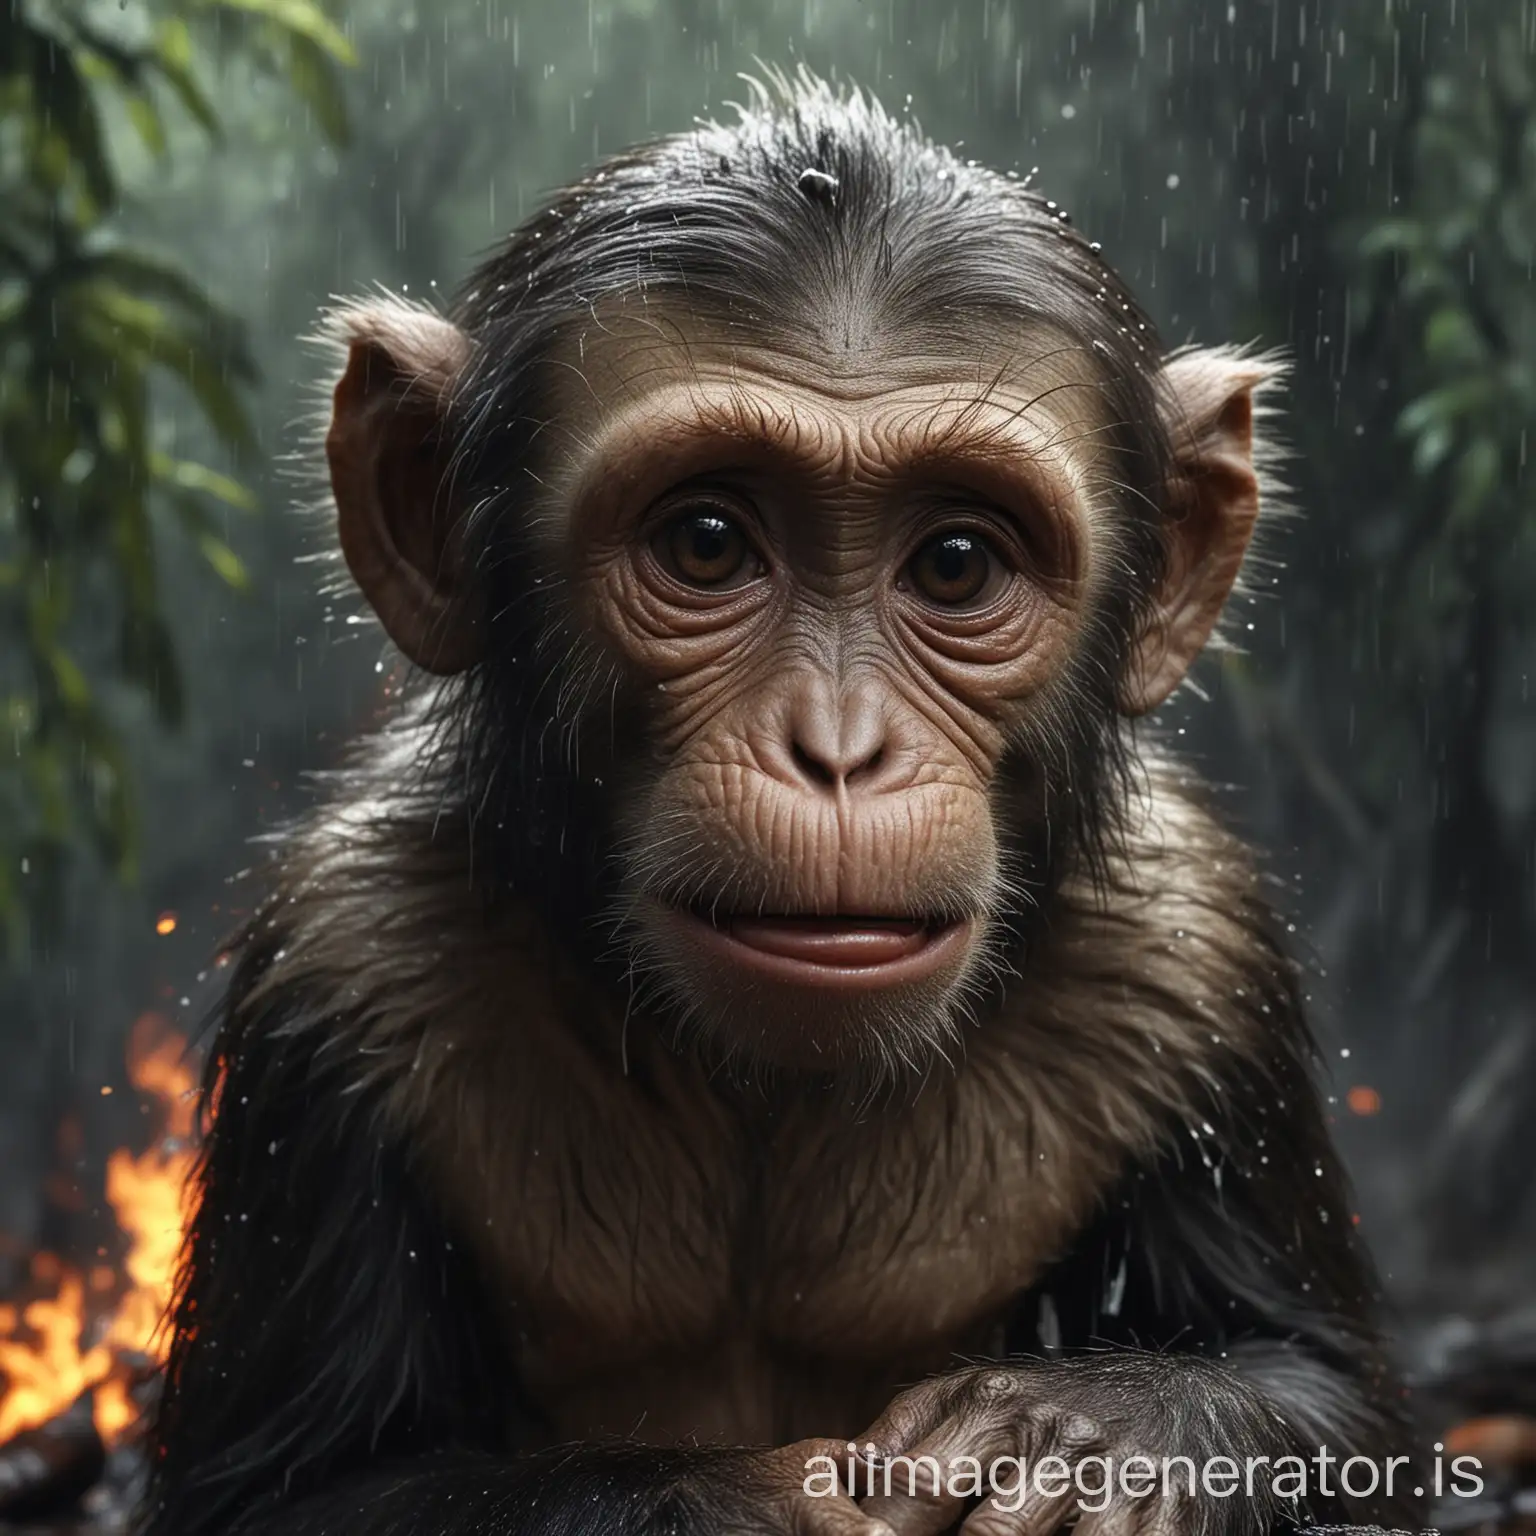 professioneller Shoot von einem traurigen weinenden Affen, Tränen, Zerstörung, brennender Regenwald, Angst, Starker Regen, 3D, hochauflösend, perfekte Qualität, echte Fotografie